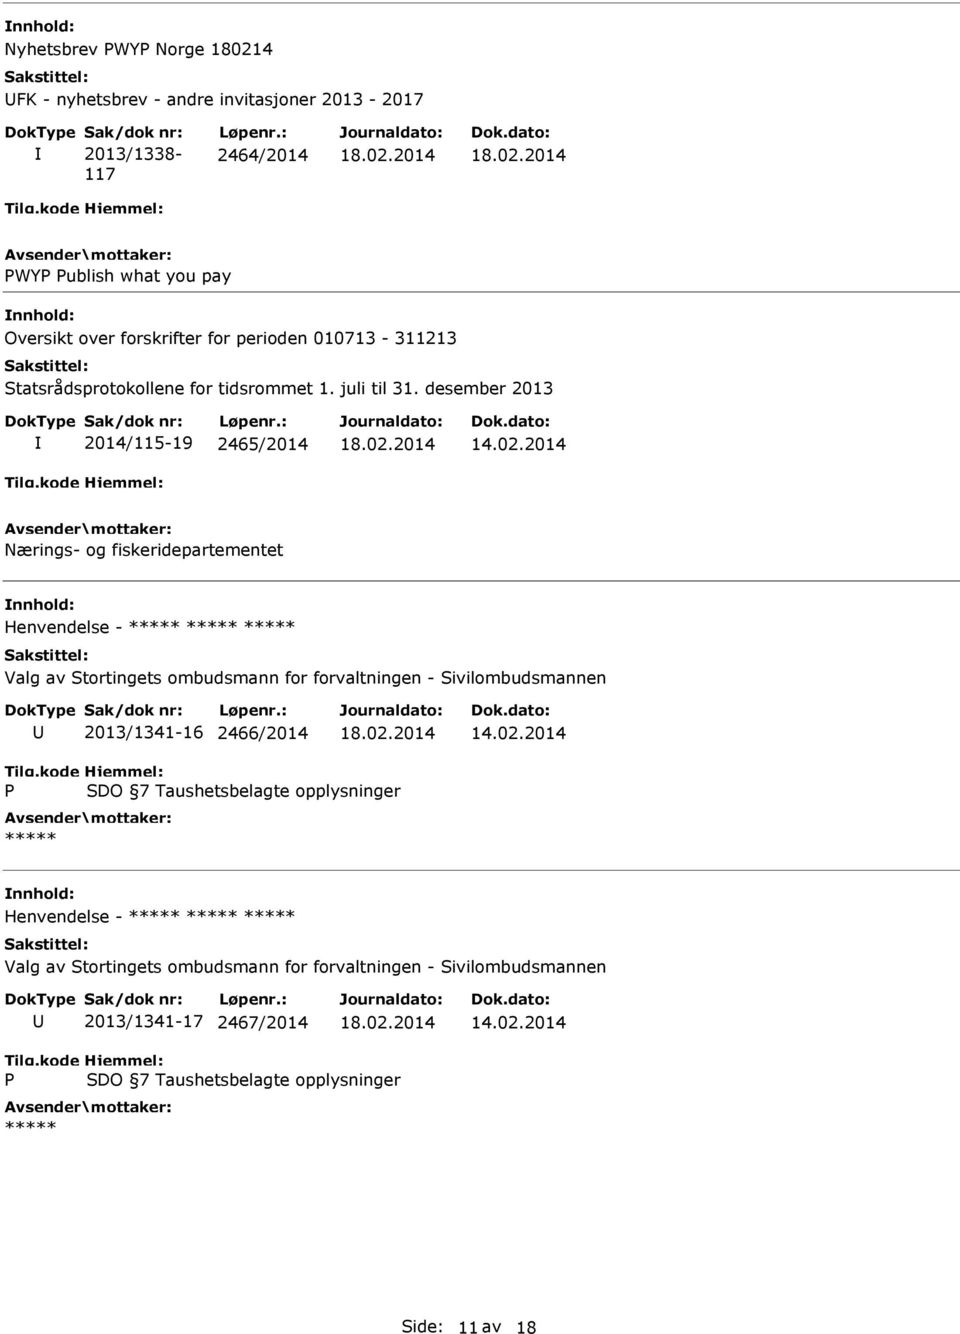 desember 2013 2014/115-19 2465/2014 Nærings- og fiskeridepartementet Henvendelse - ***** ***** ***** Valg av Stortingets ombudsmann for forvaltningen - Sivilombudsmannen